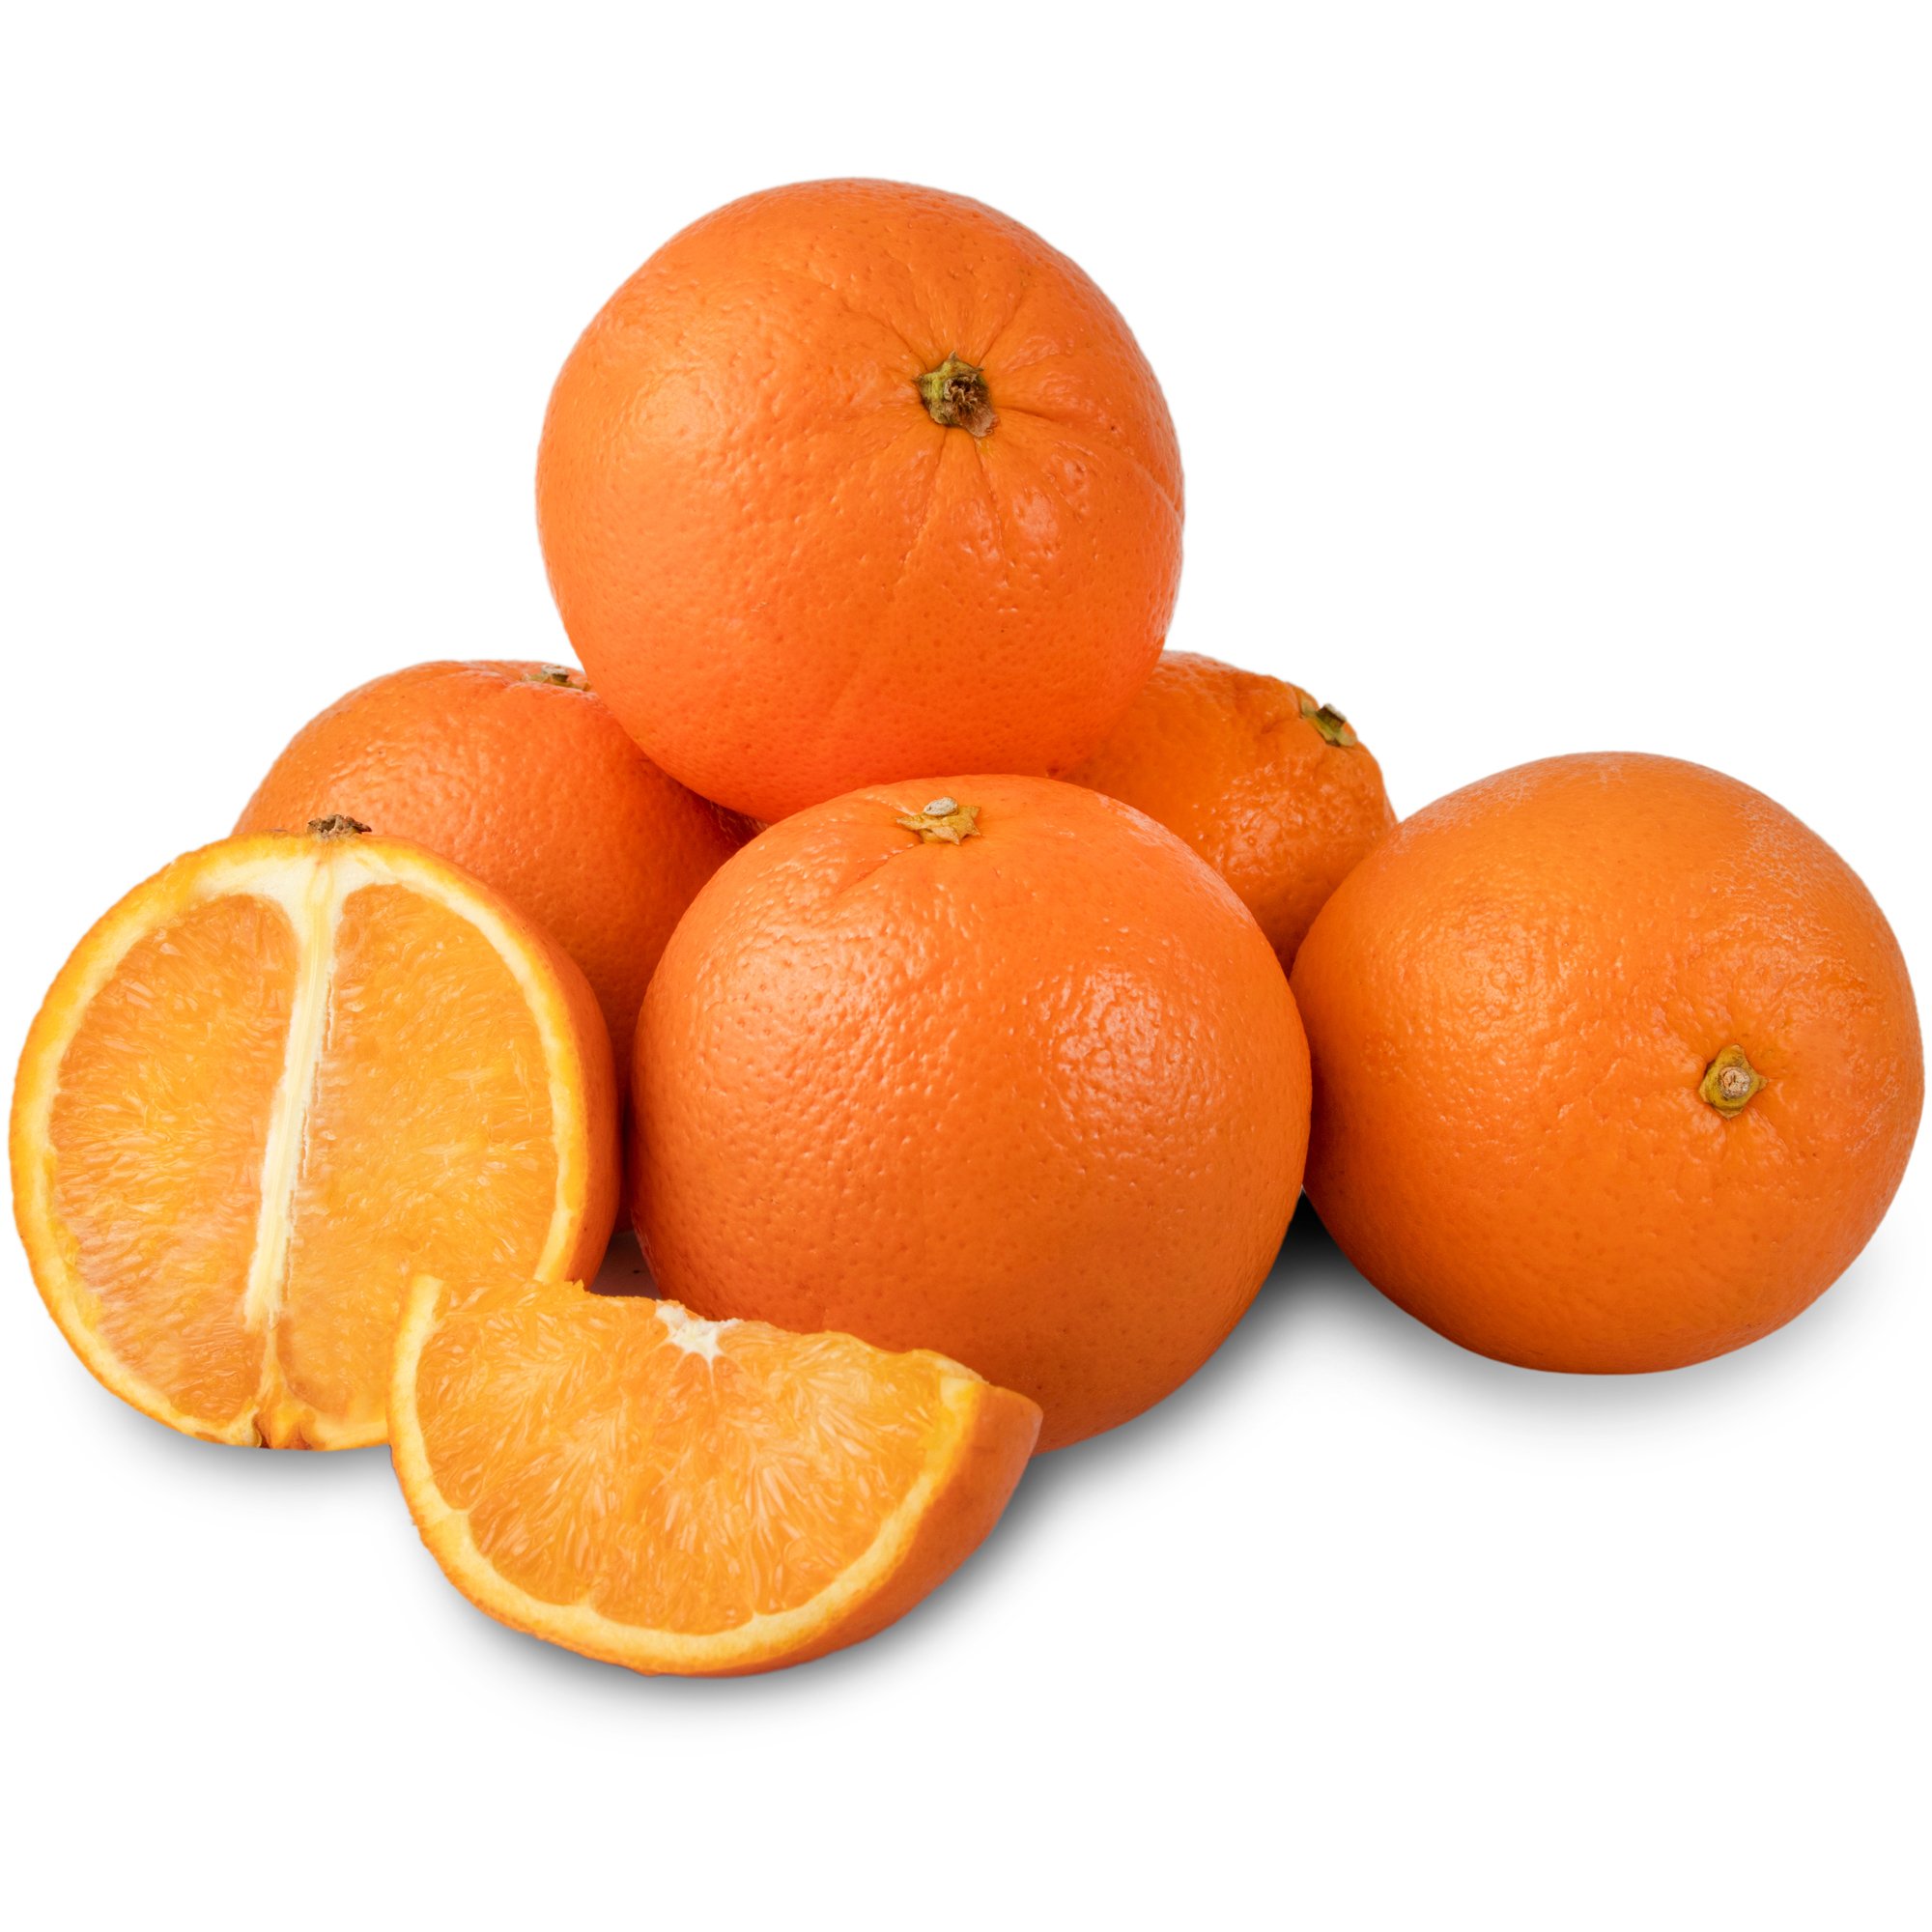 خرید آنلاین پرتقال تامسون شمال (تعداد تقریبی ۳ عدد) ۱ کیلوگرمی ± ۸۰ گرم ازهایپراستار و سوپرمارکت آنلاین اسنپ مارکت